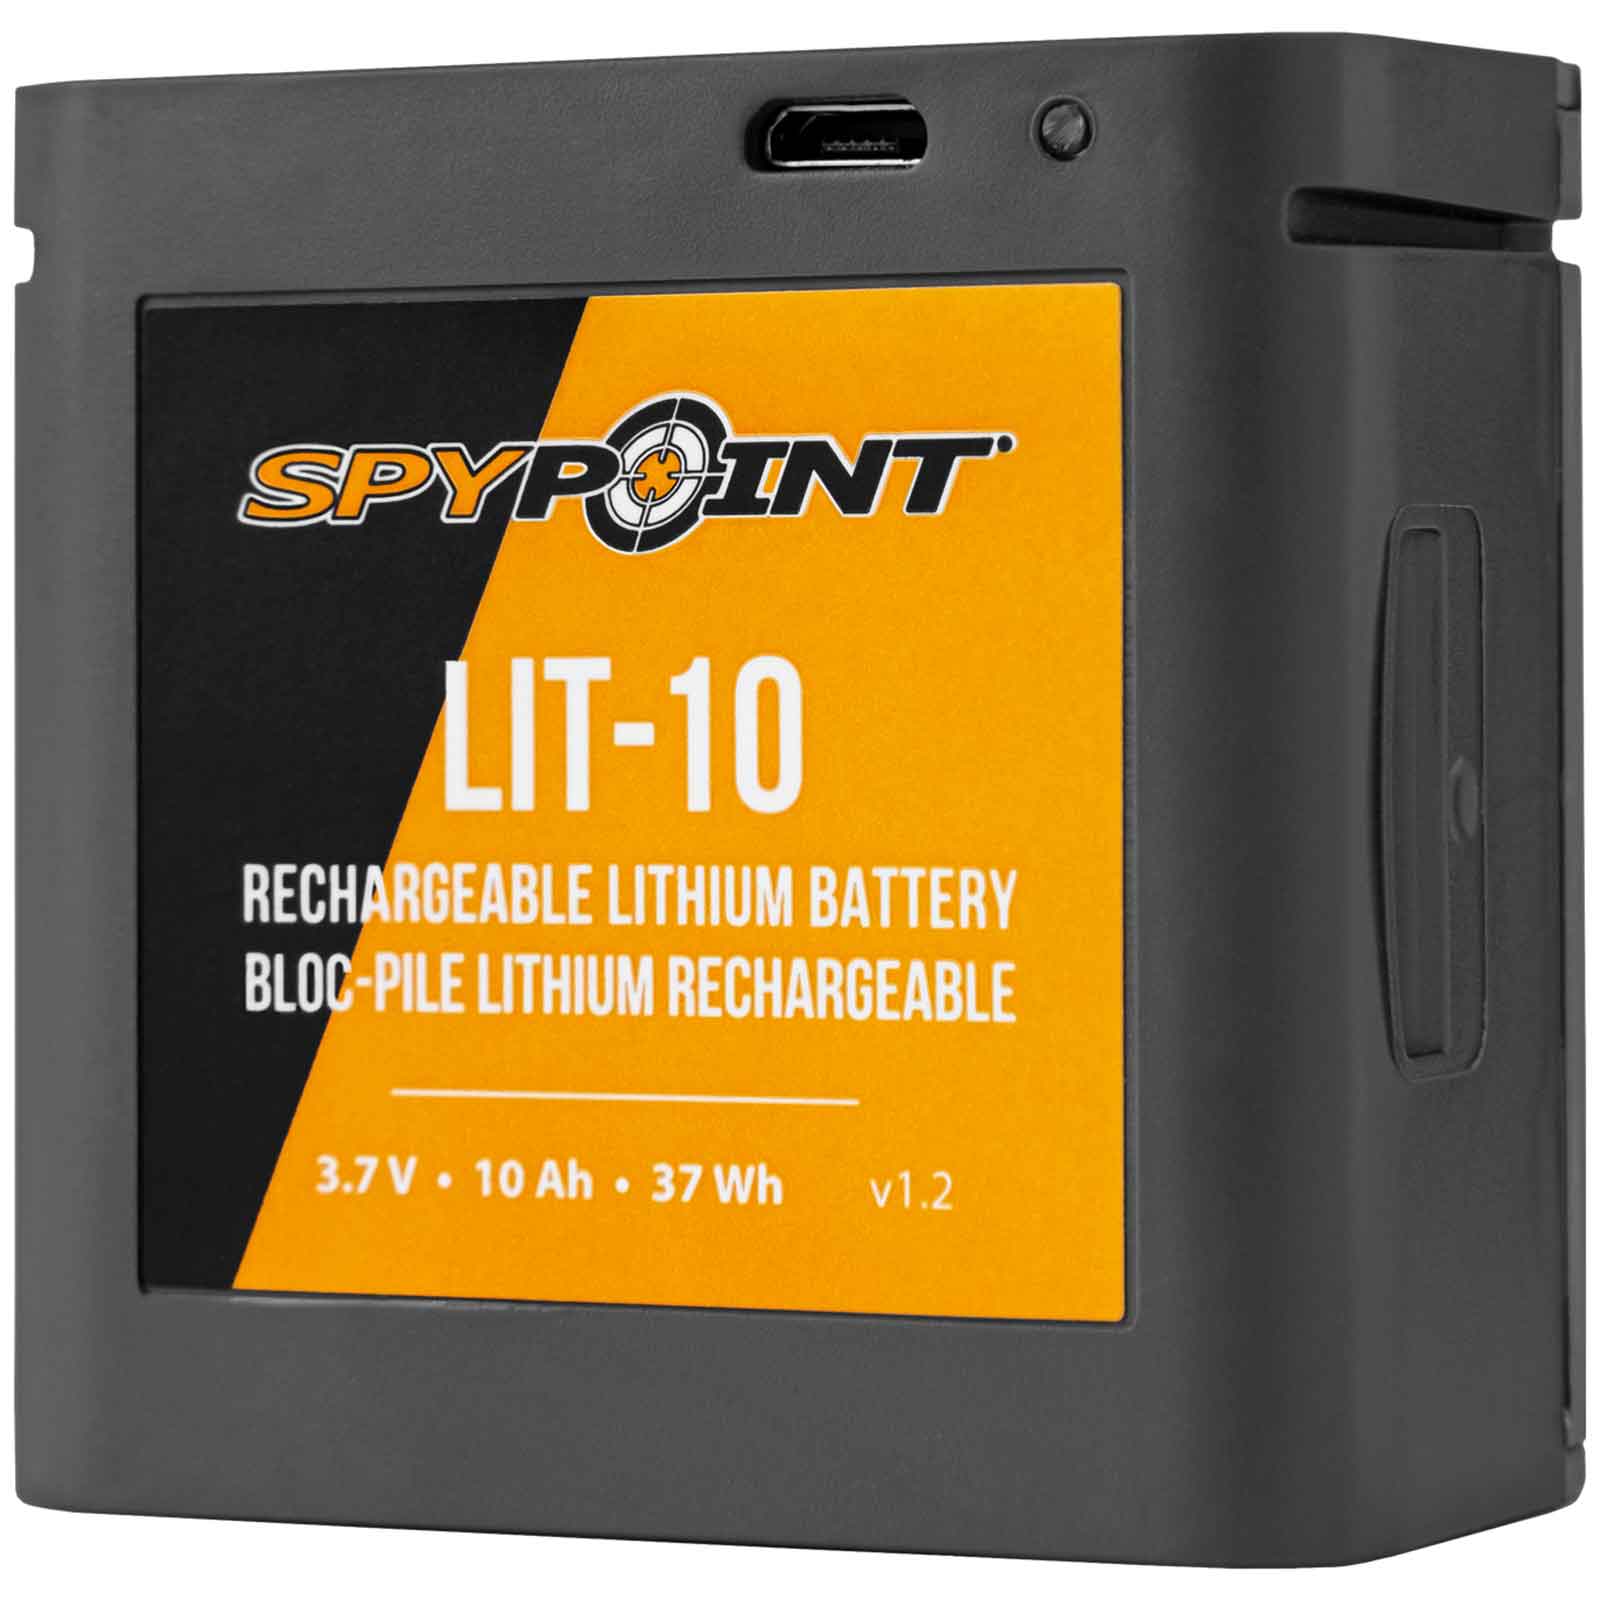 Batterie de lithium spypoint lit-10